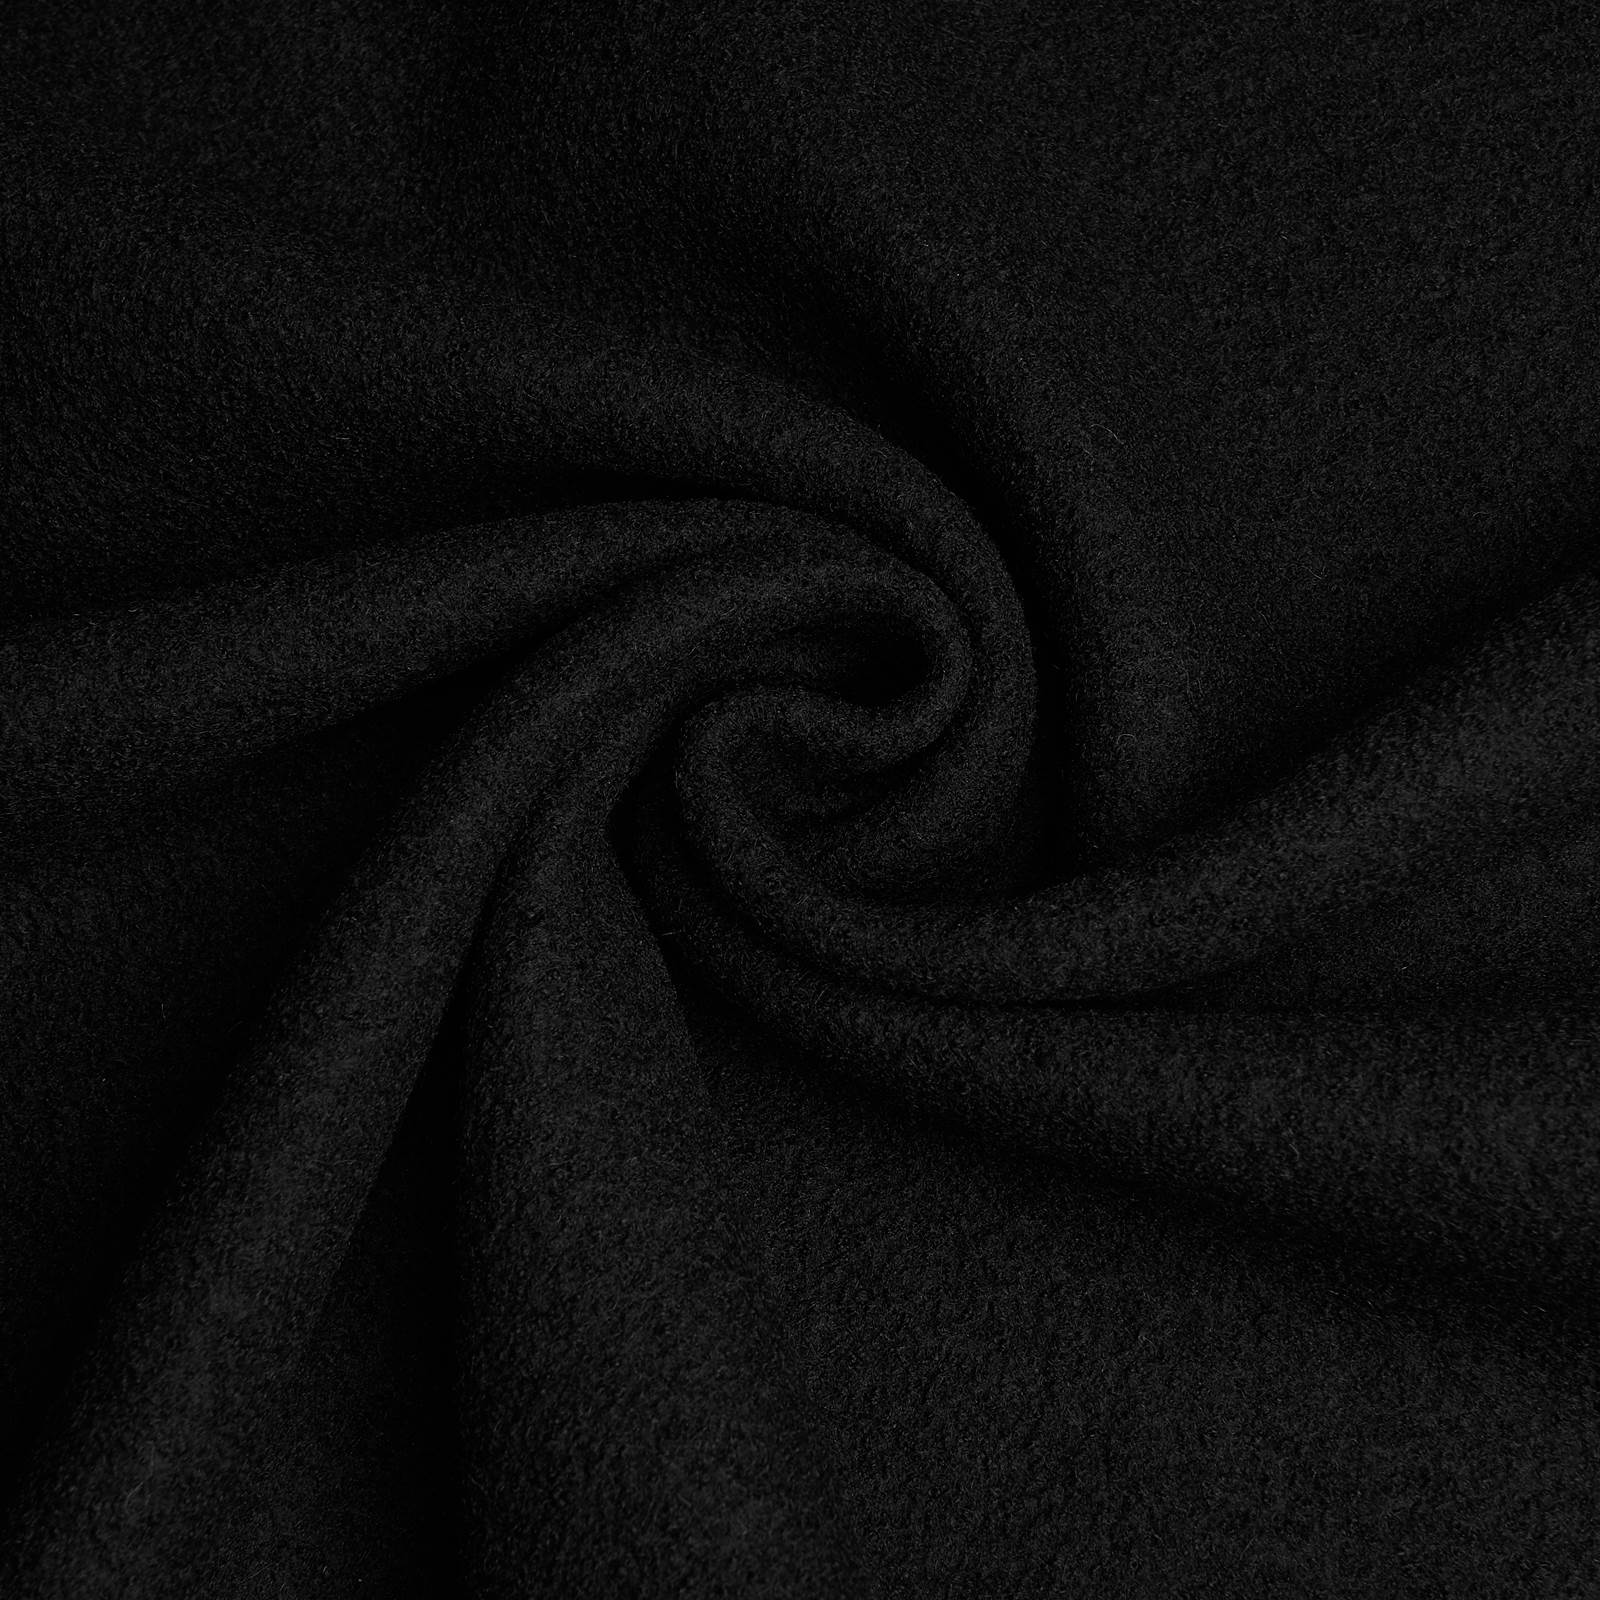 Fabian - tela de lana / loda cocida - 100% lana virgen (negro)